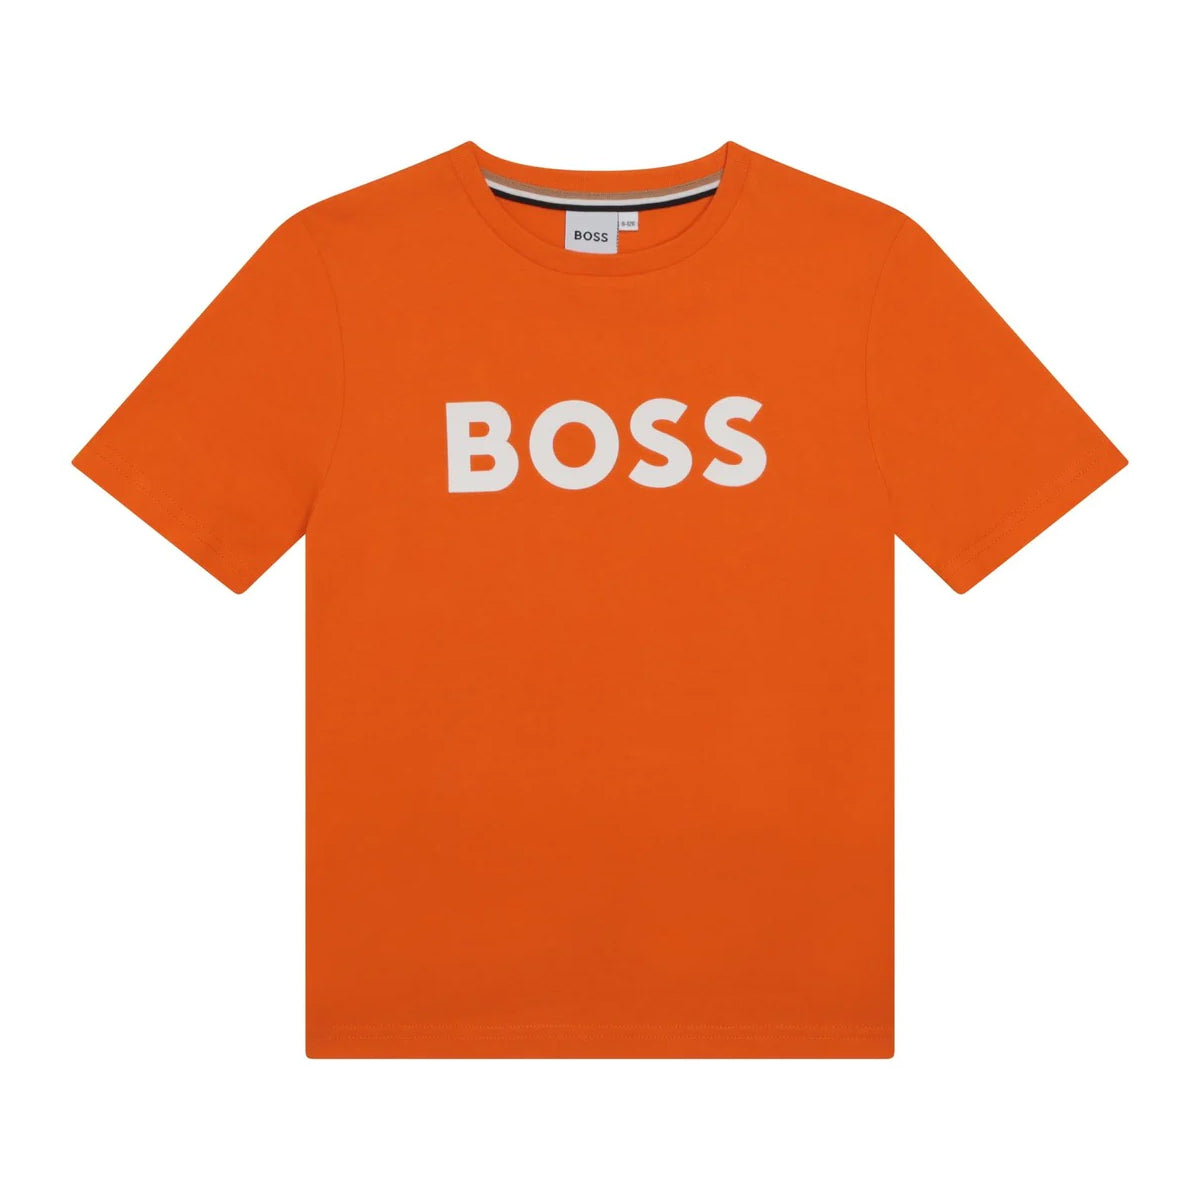 חולצת טי שרט BOSS לוגו קלאסי לילדים